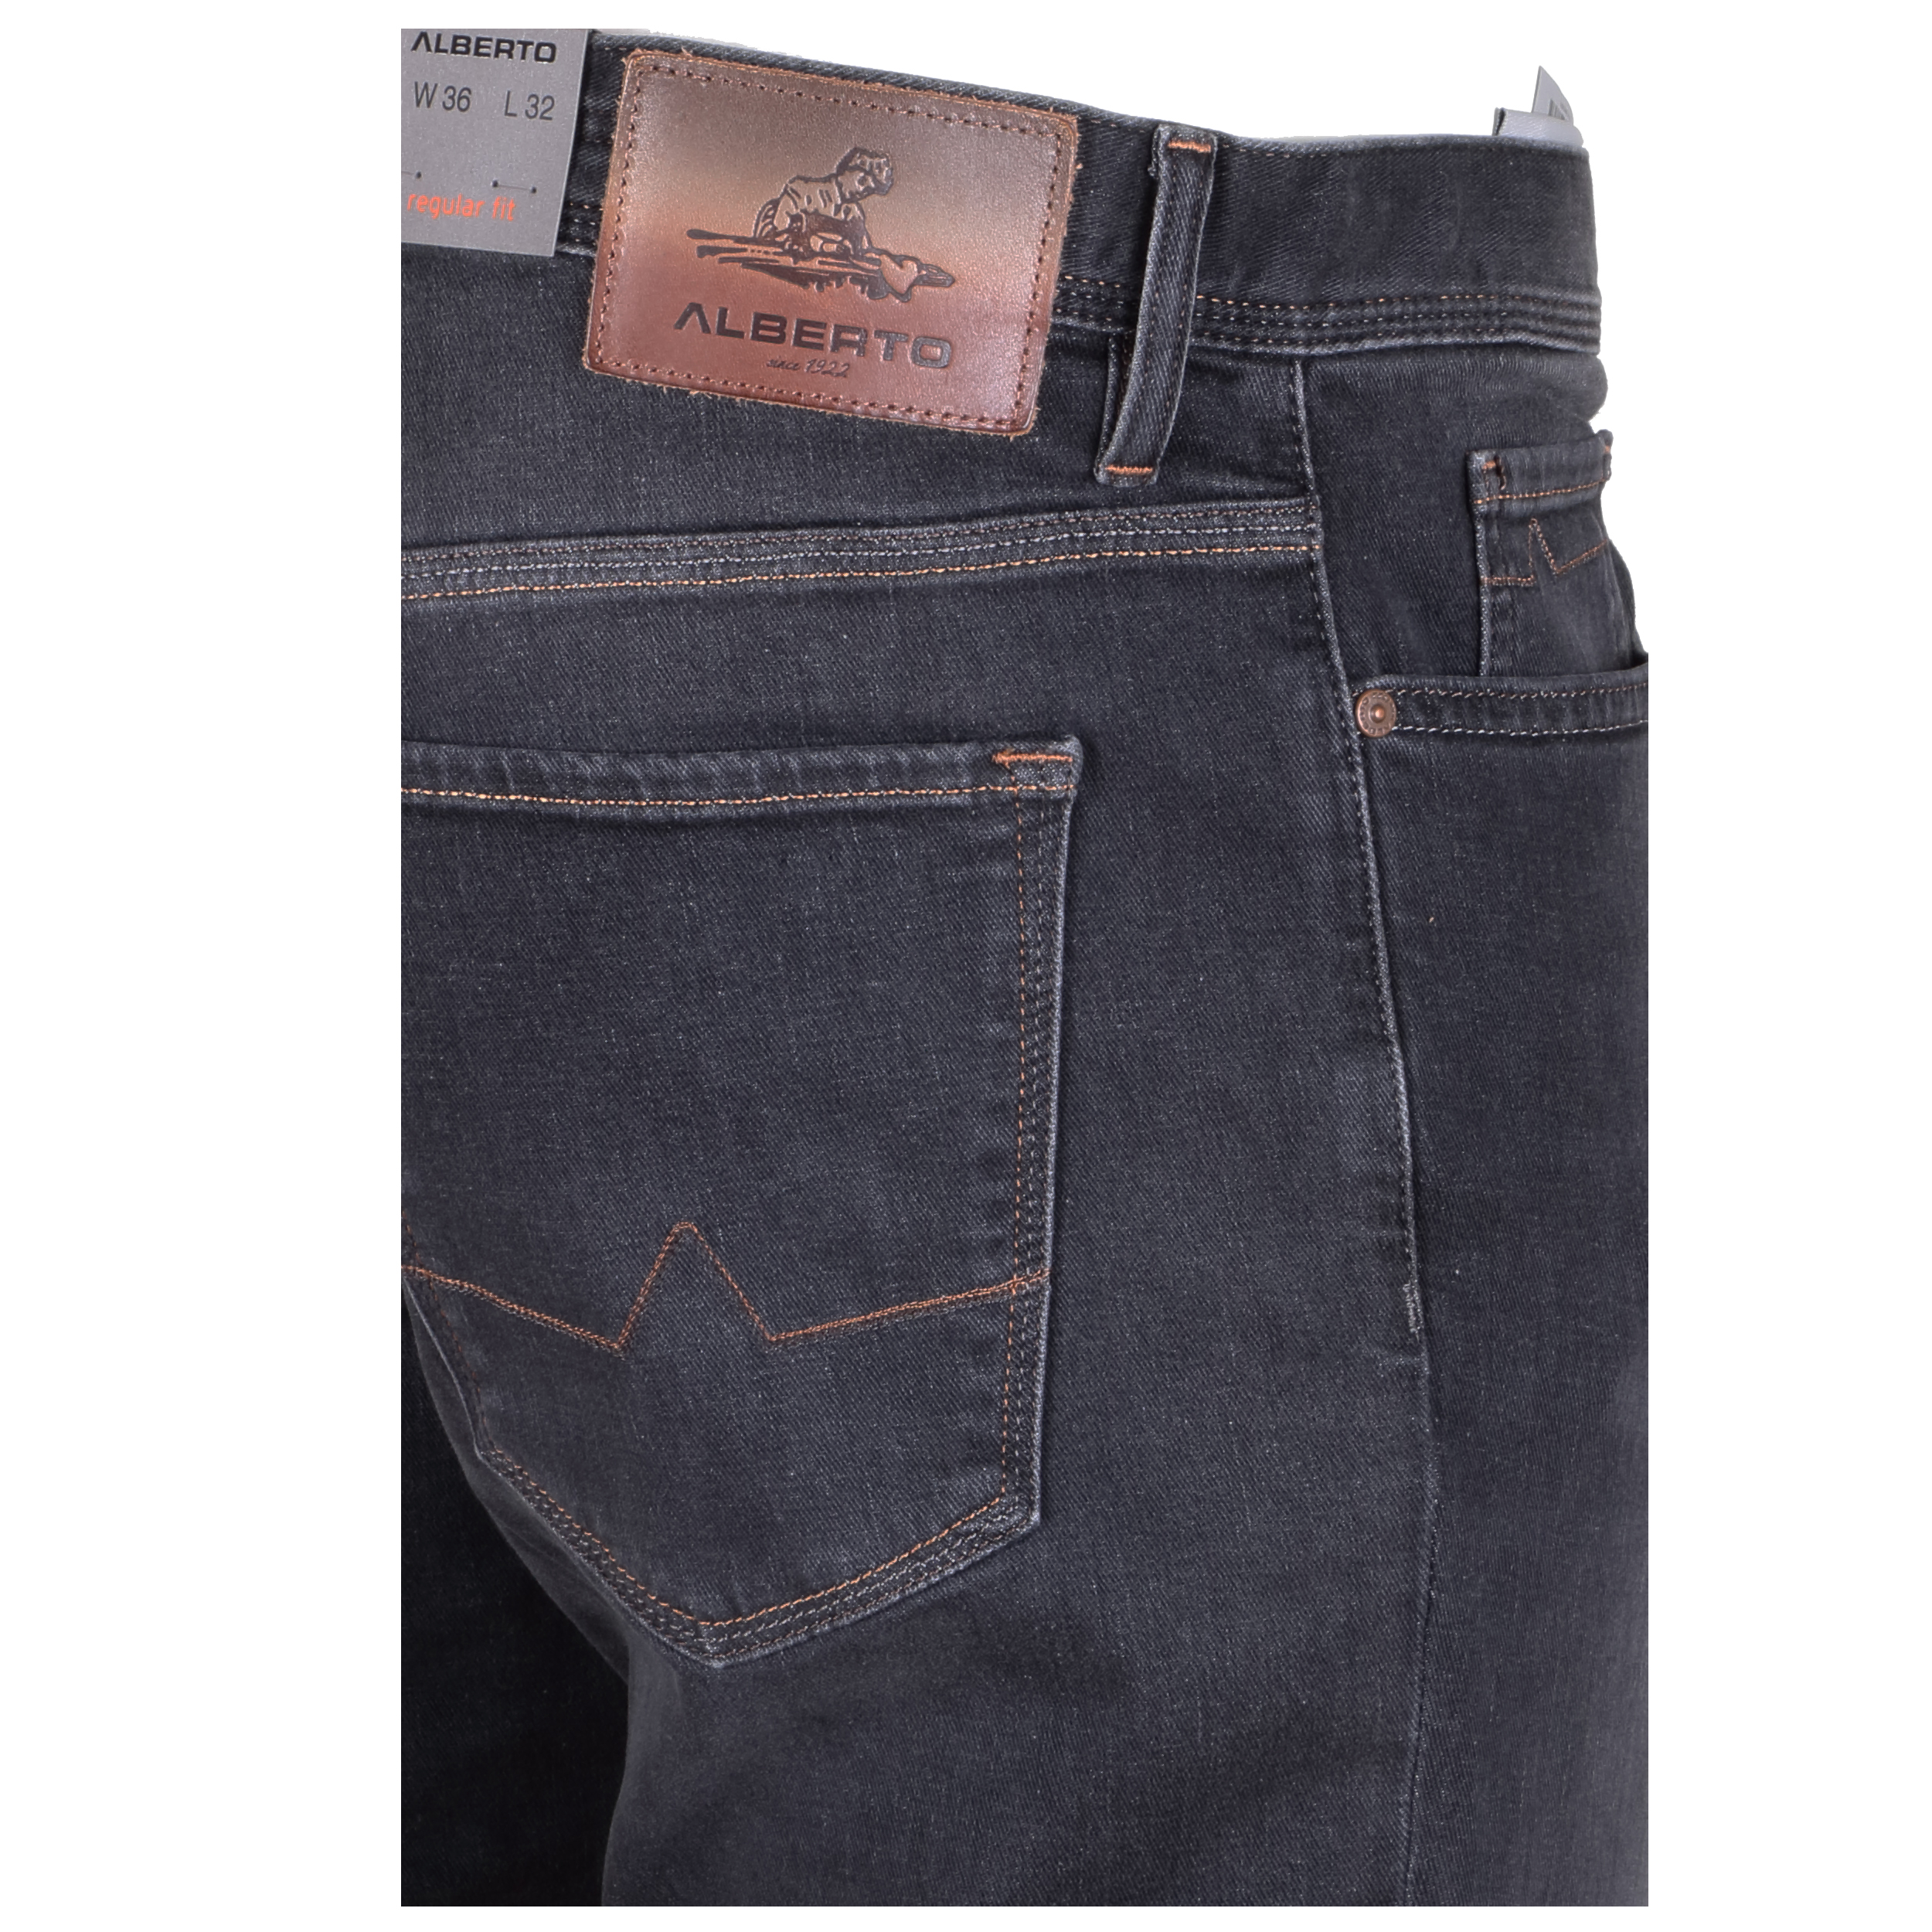 Alberto Herren Jeans Pipe regular fit - grey 34/32